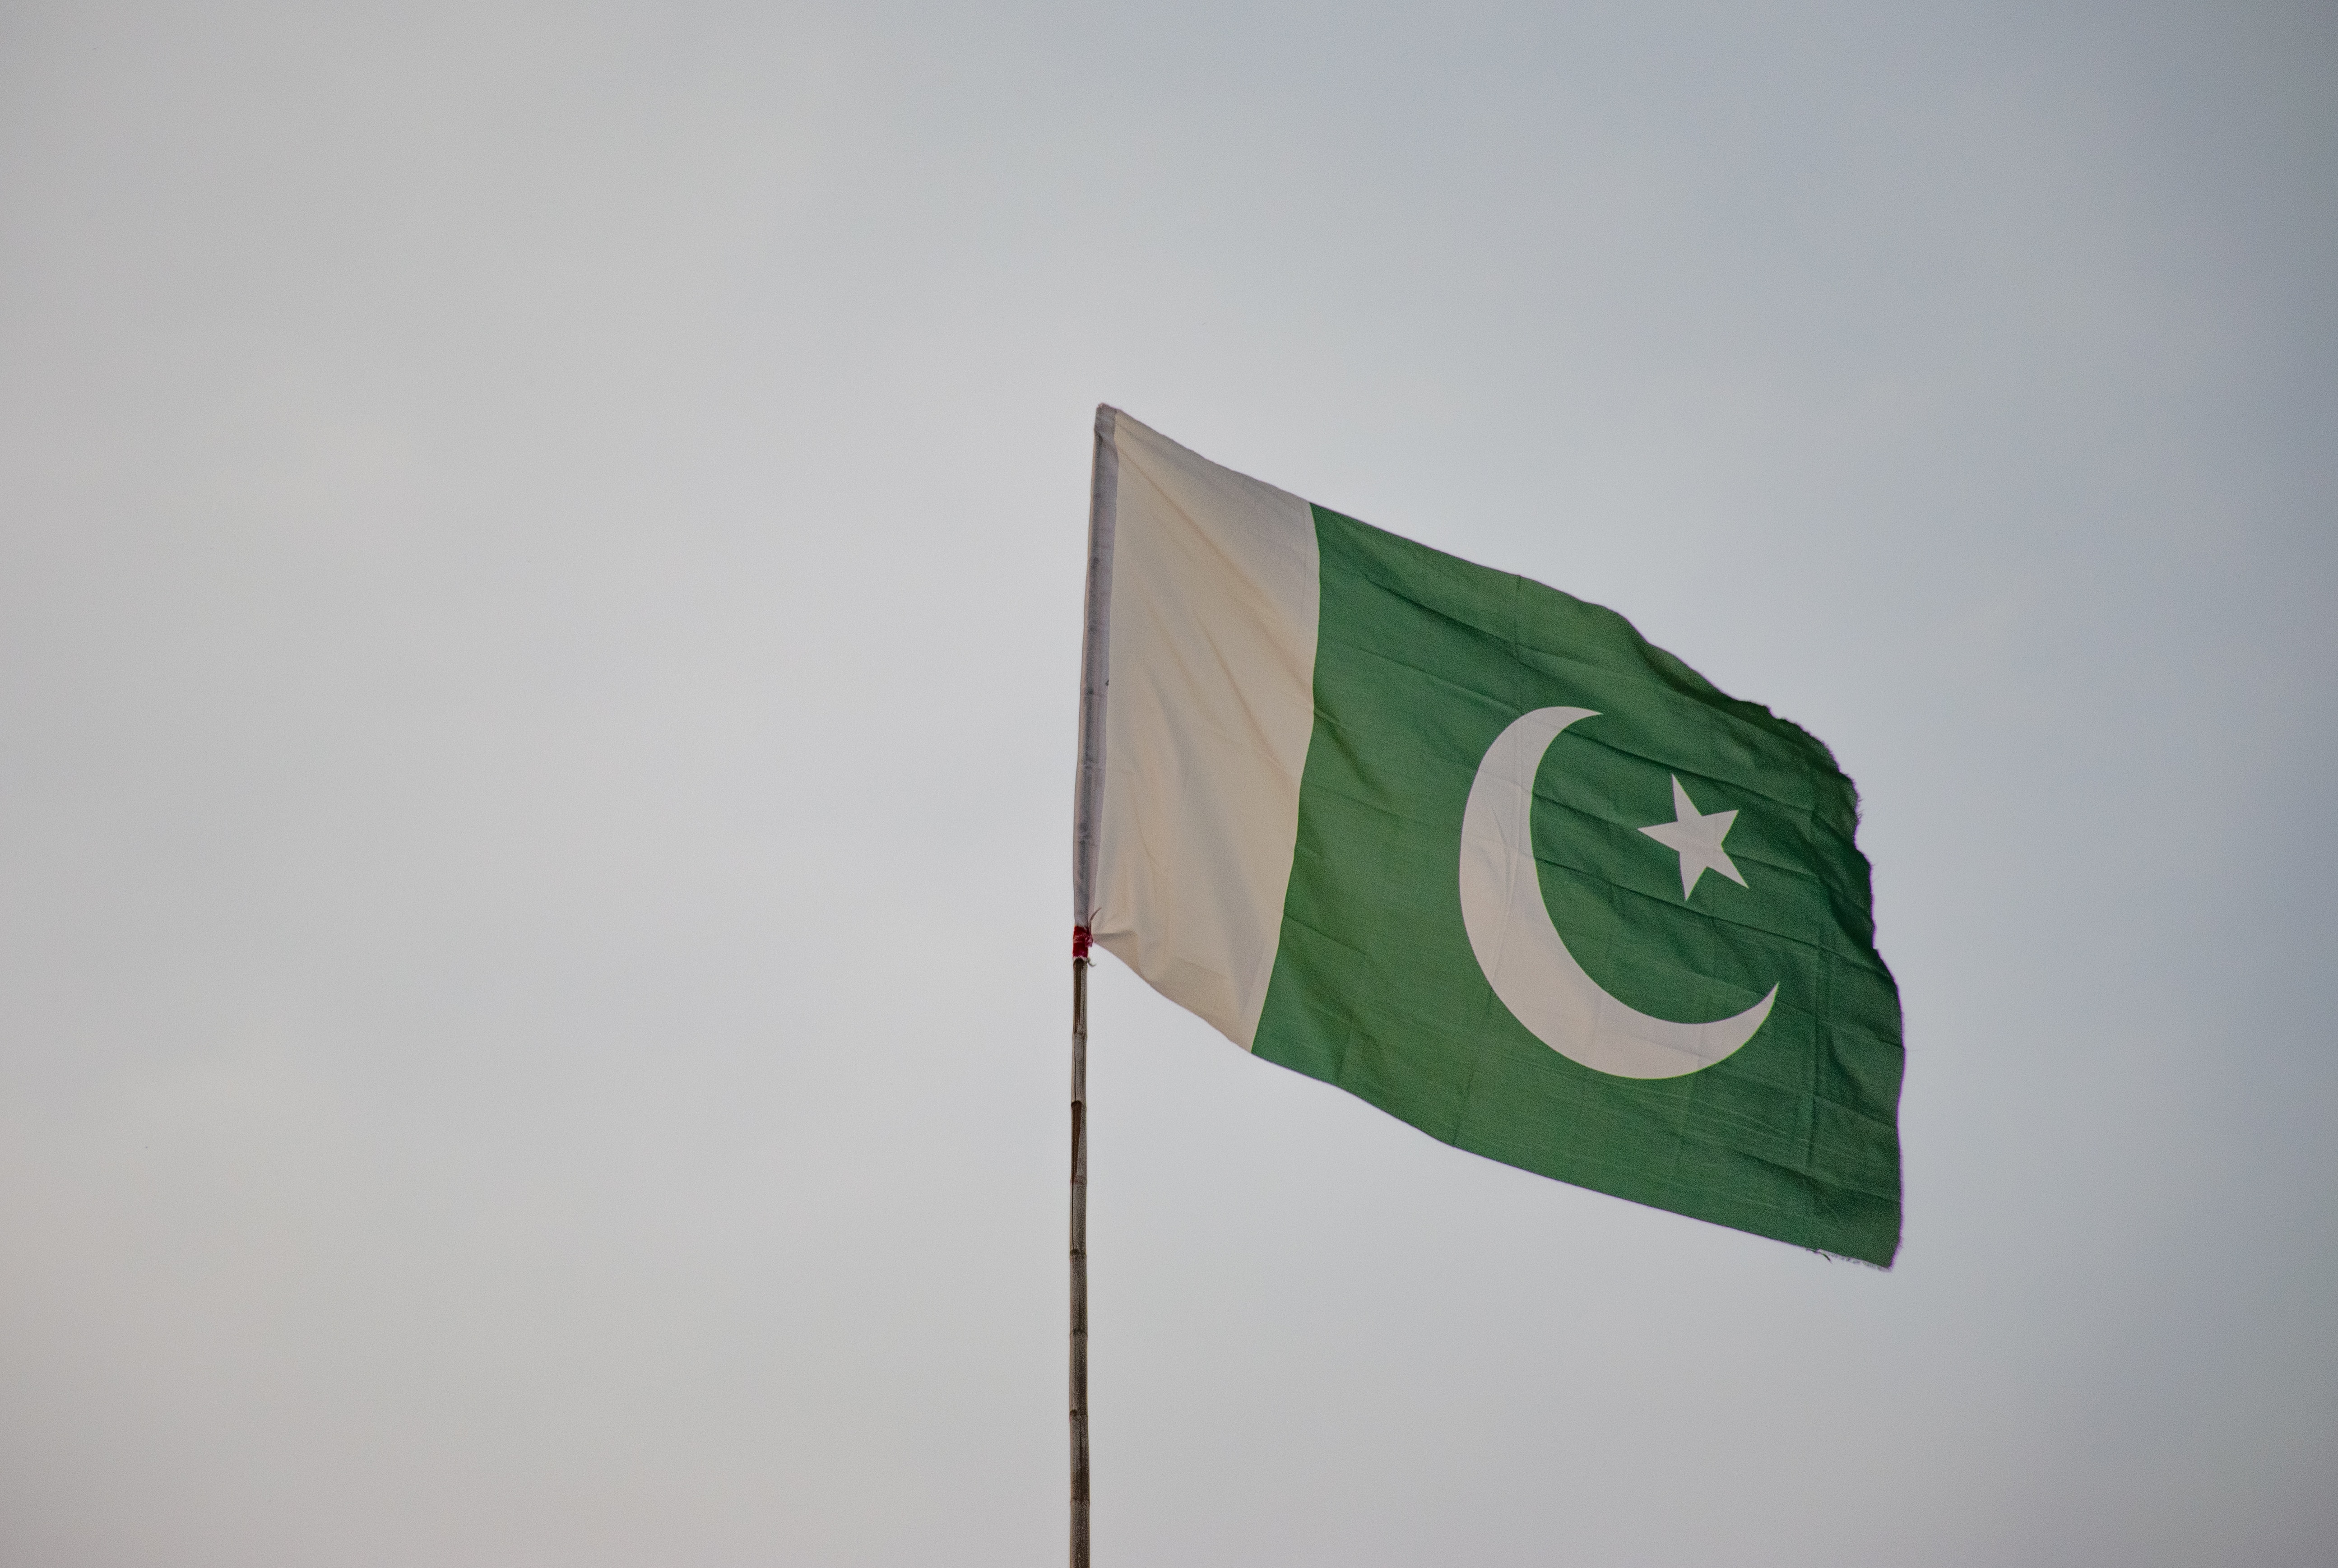 Φρικτός θάνατος για θρησκευτικό ηγέτη στο Πακιστάν – Σοκαριστικό βίντεο